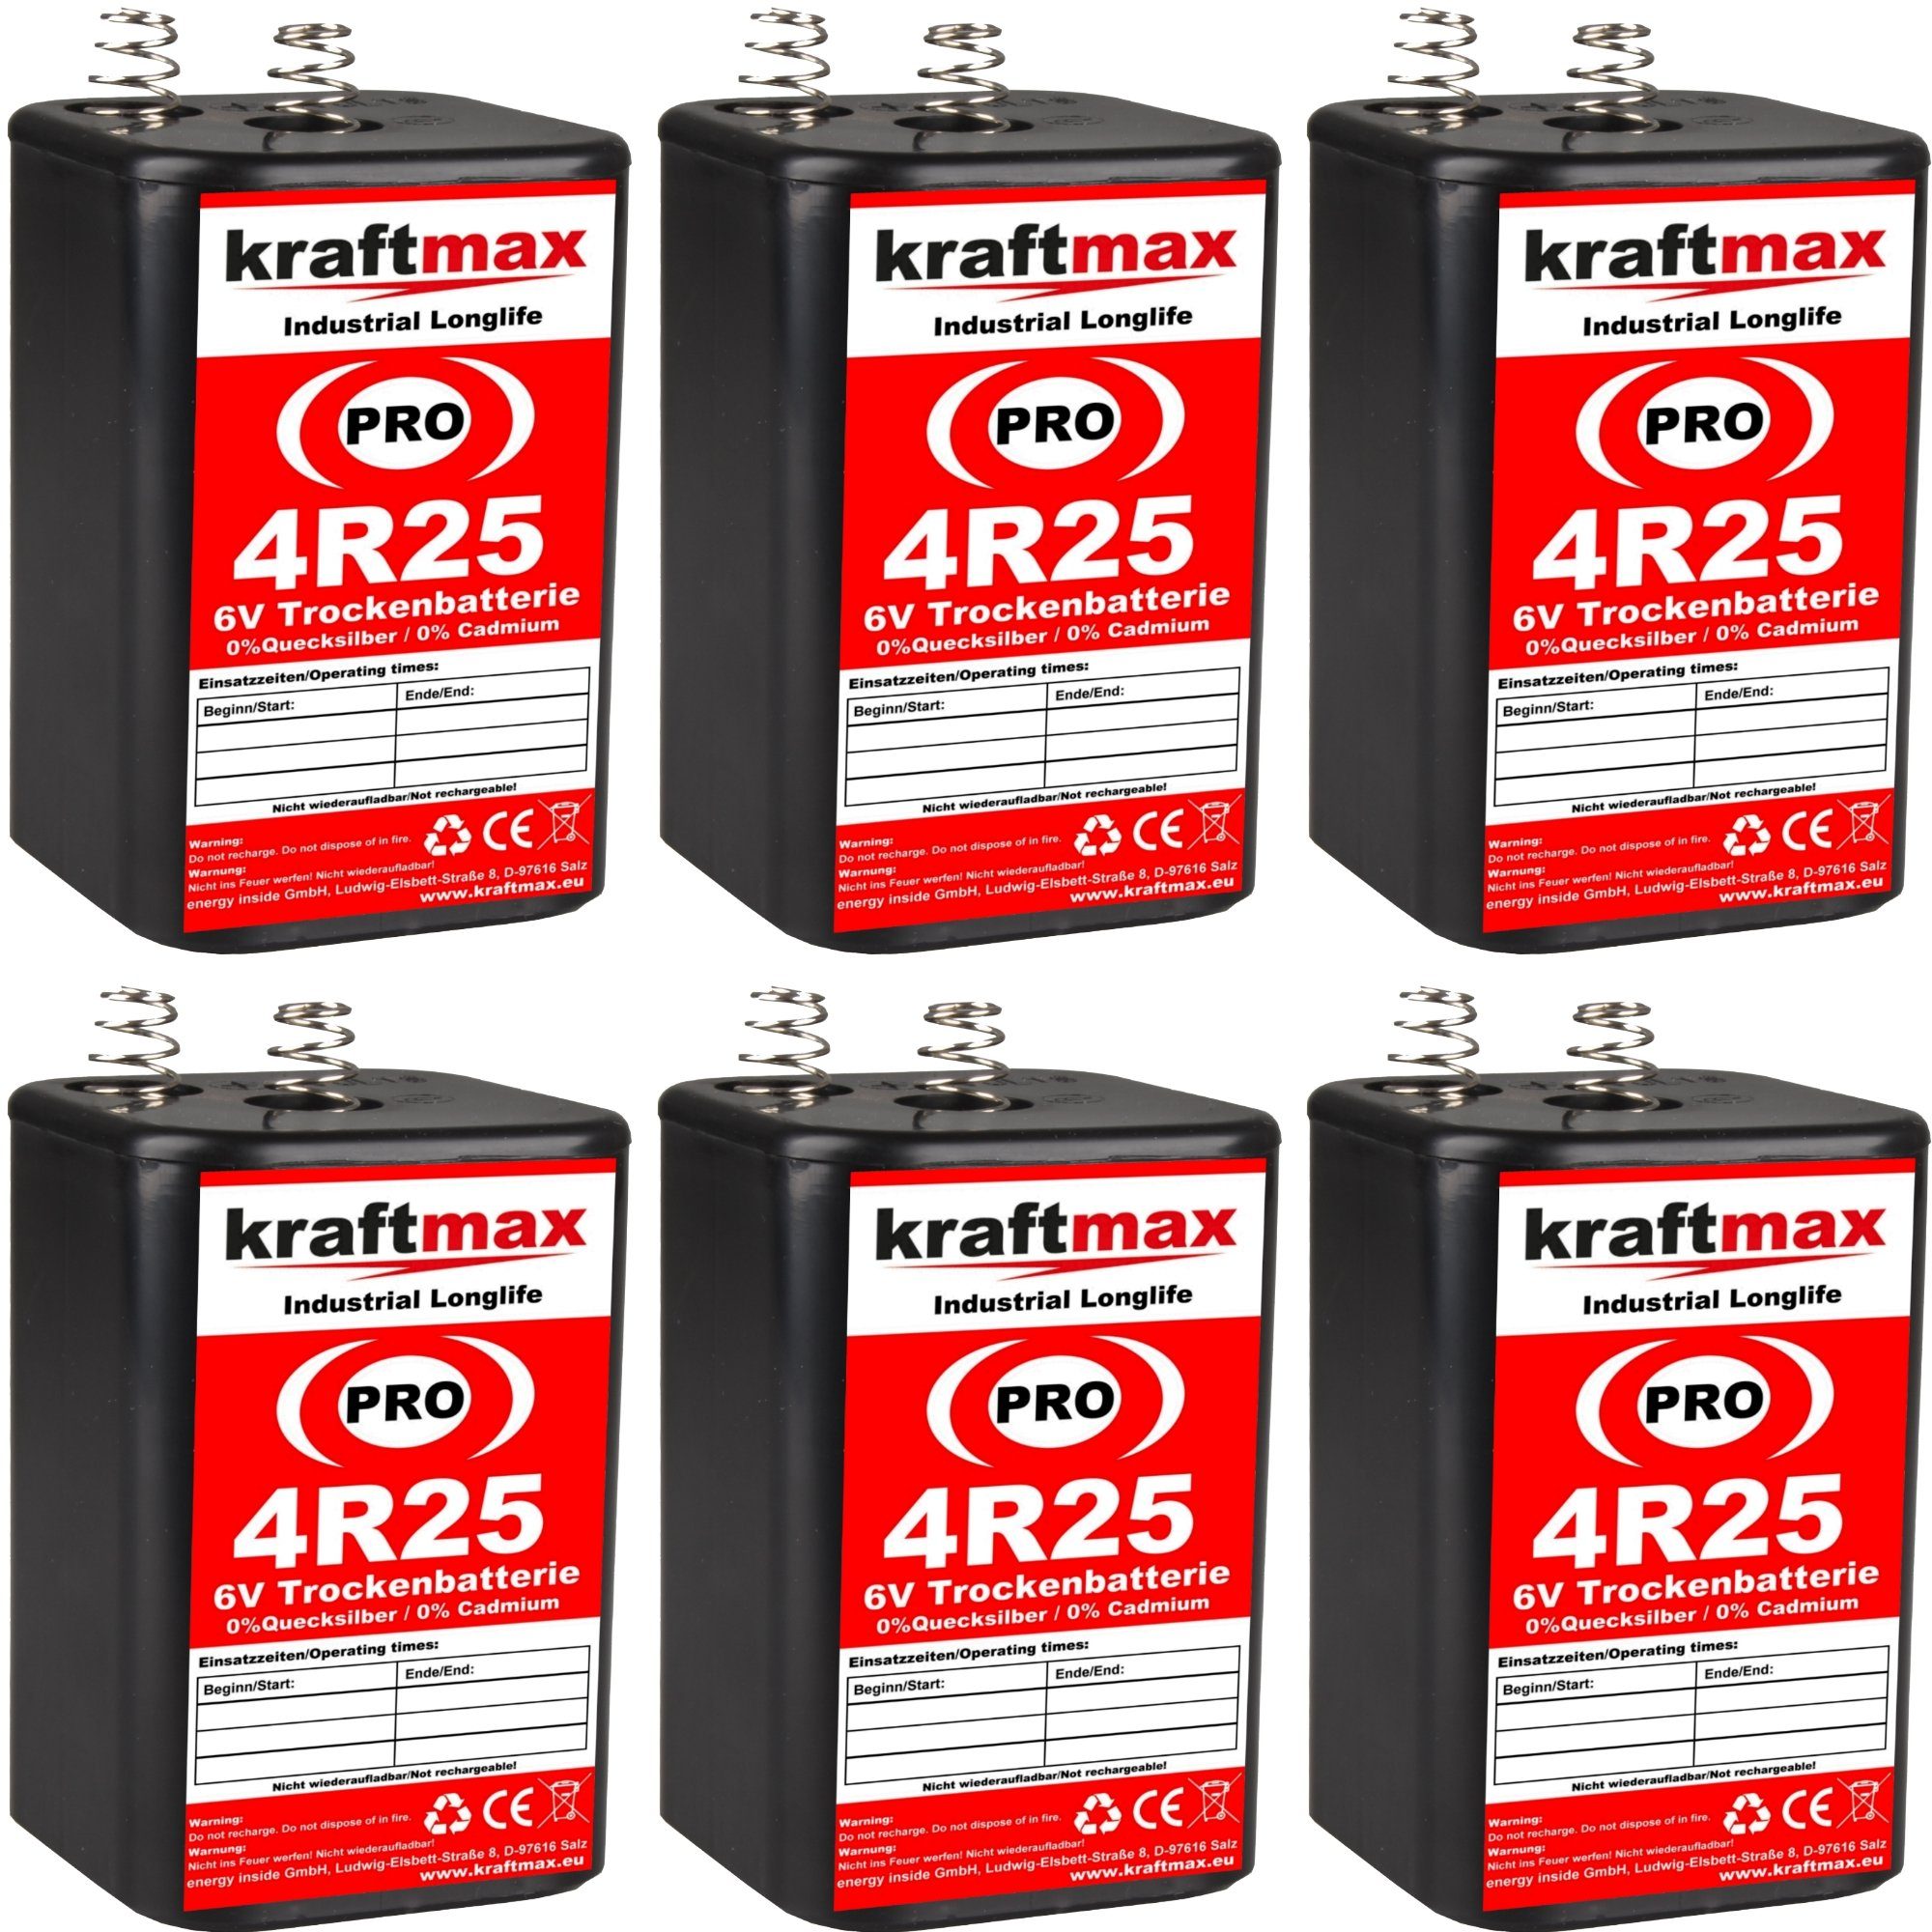 kraftmax 6er Pack 4R25 PRO - 6V Industrial Longlife Blockbatterie Batterie, (1 St)